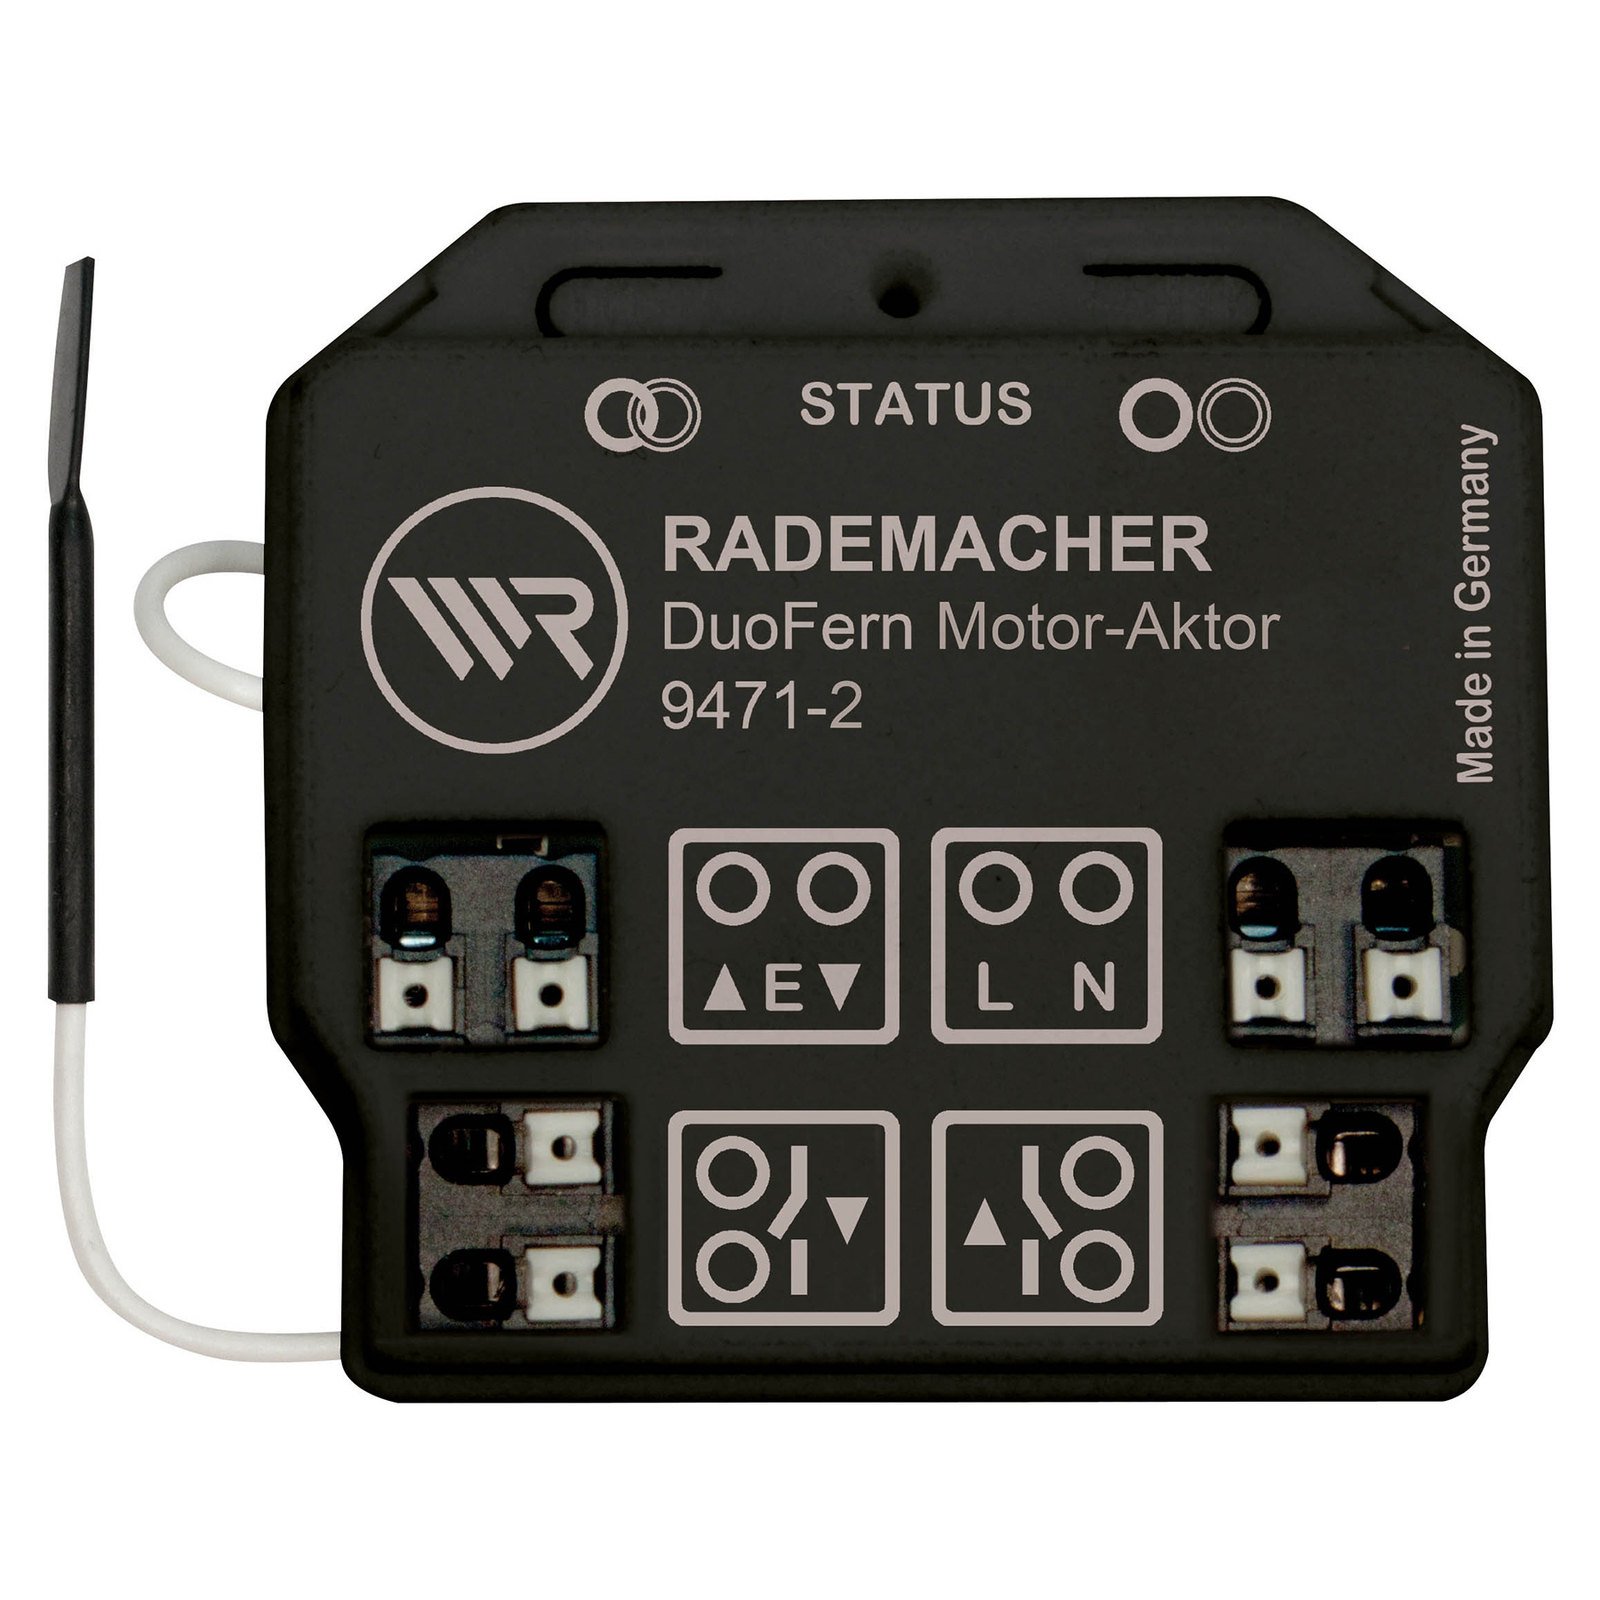 Rademacher DuoFern actuador tubular, sin potencia